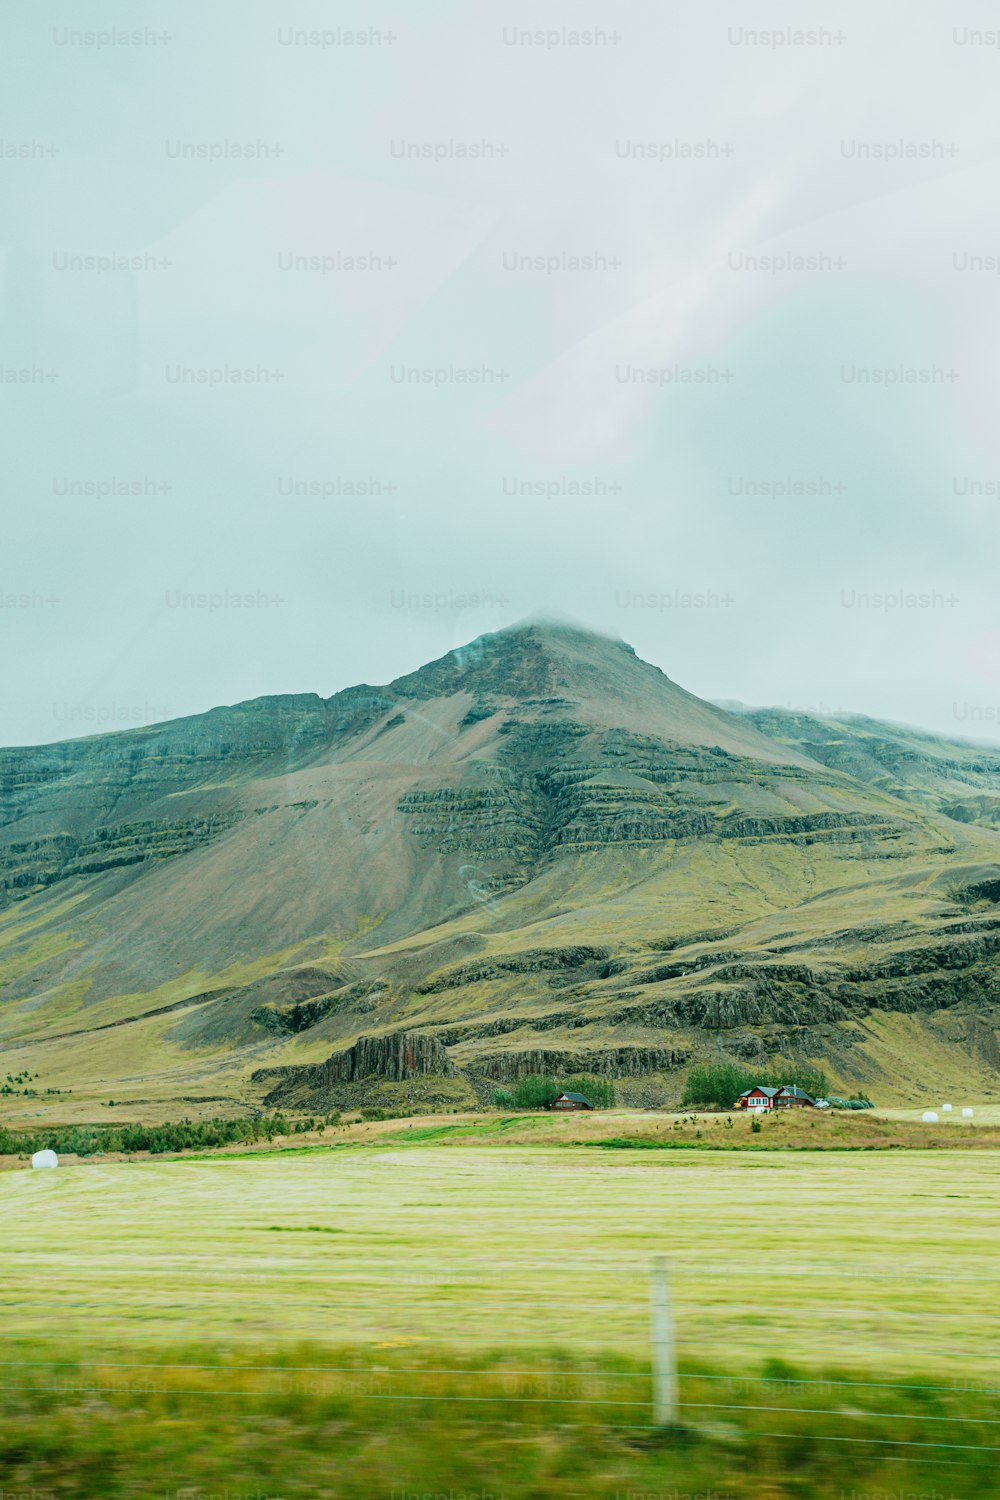 大きな山とその下に草原